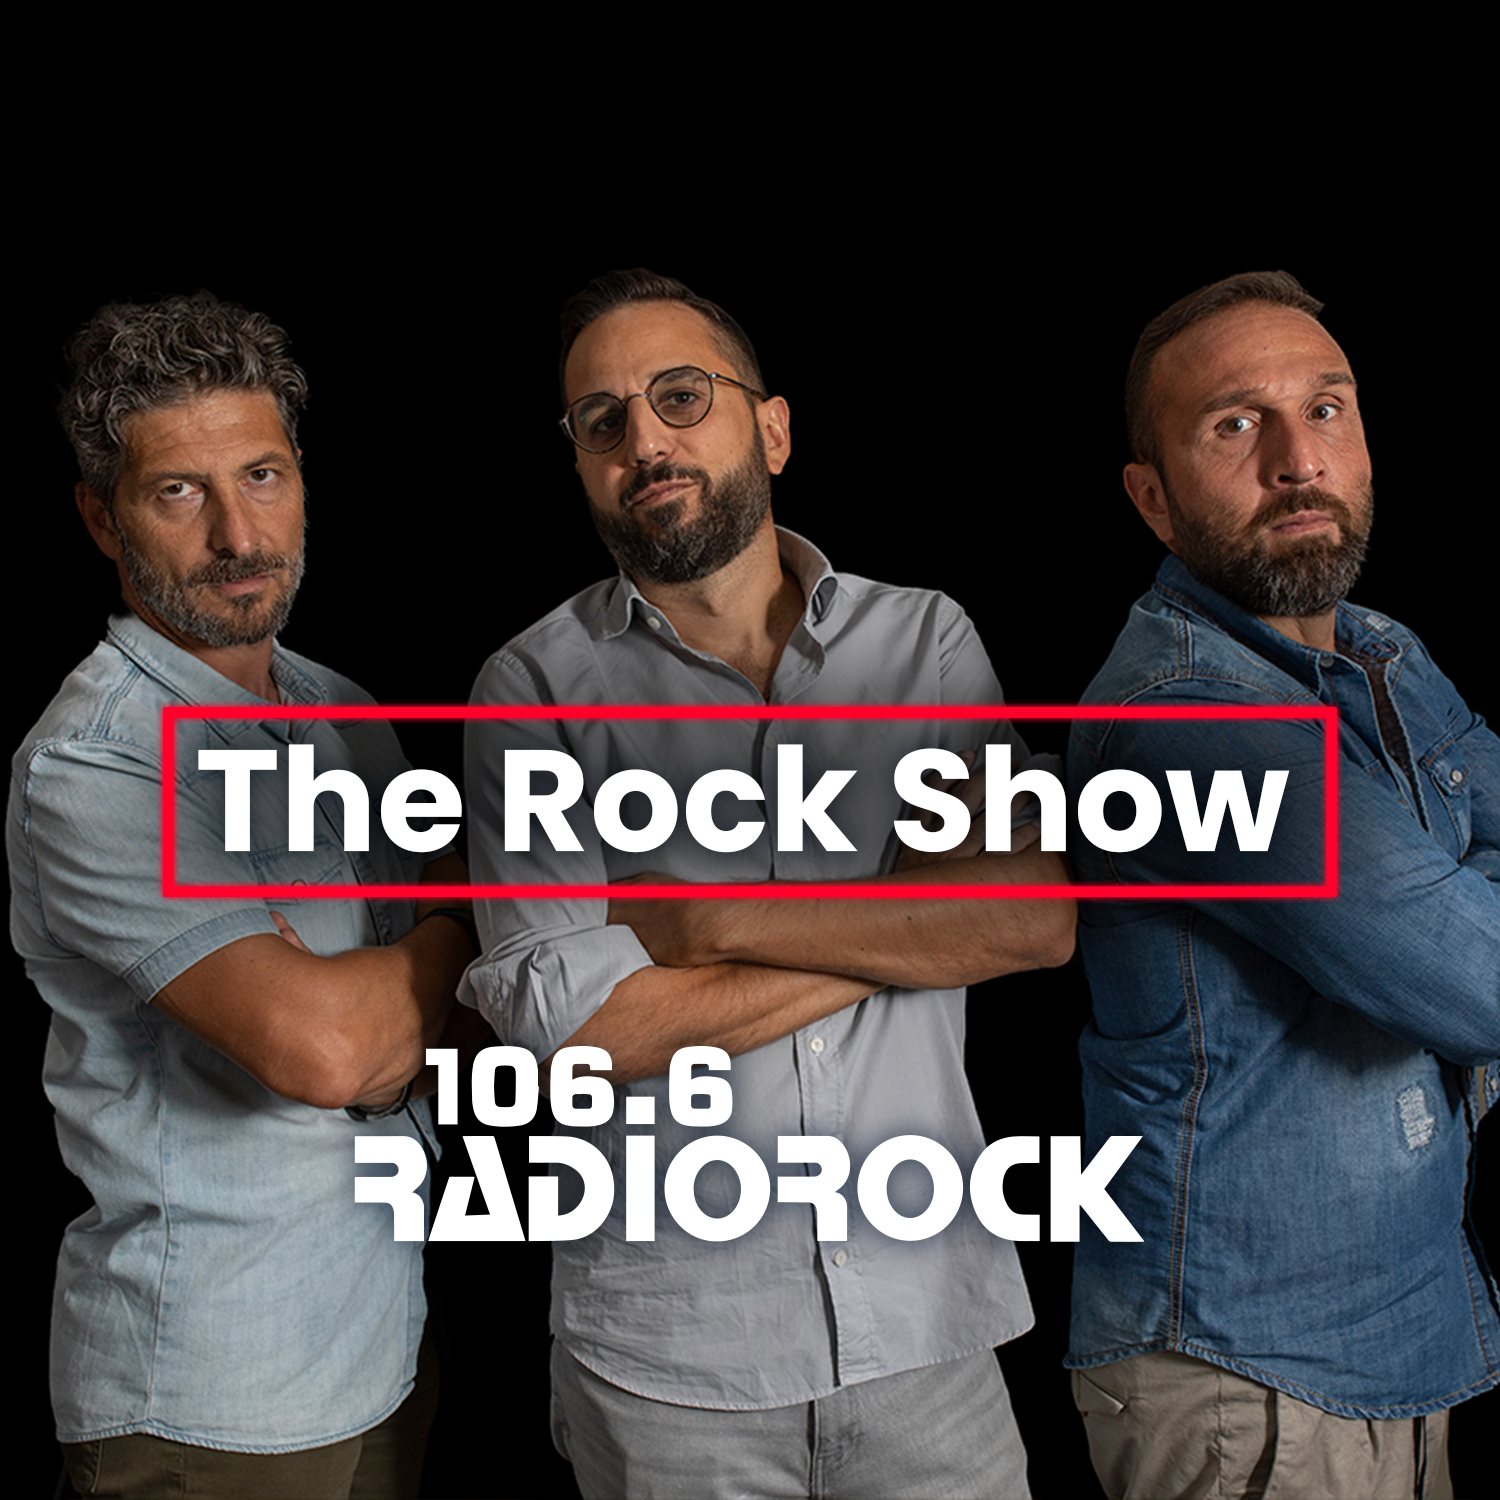 The Rock Show - S07E022: Qual è il vostro talento? (03-10-23)